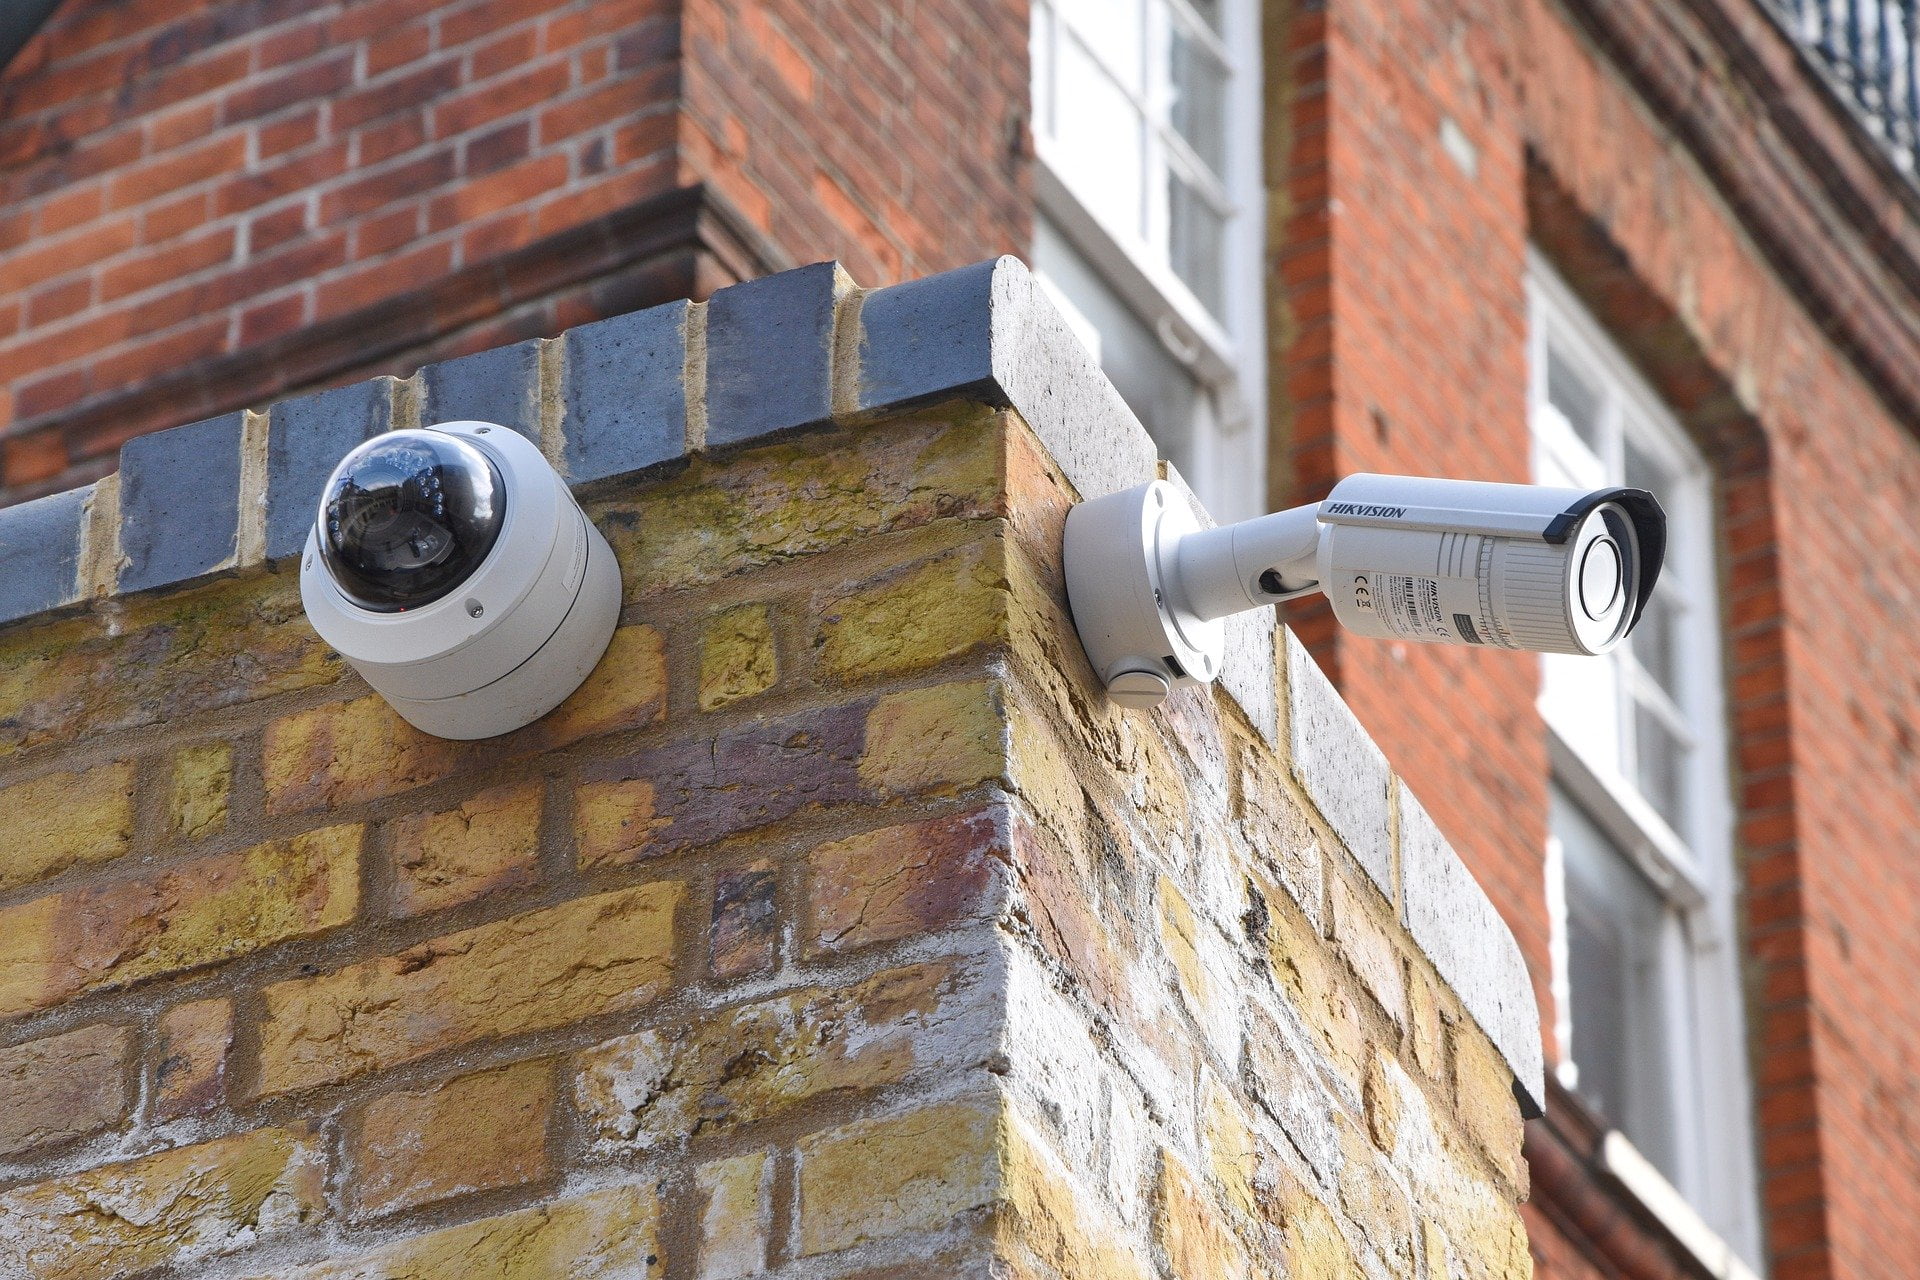 CCTV cameras in schools